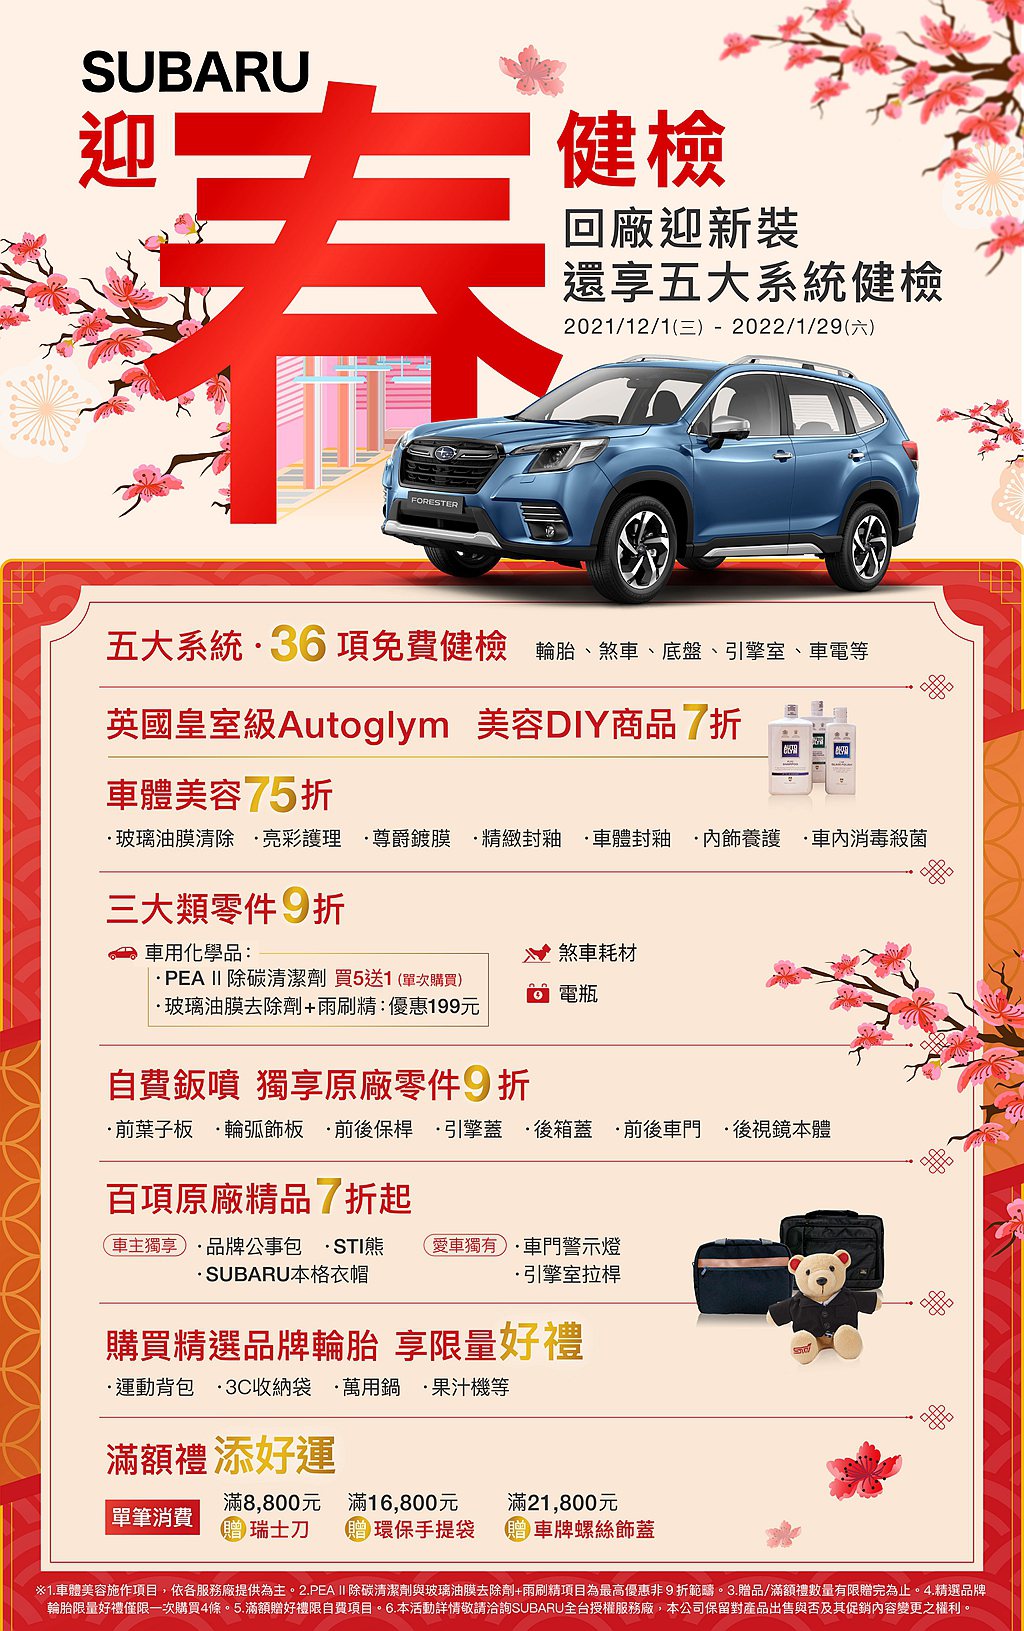 「Subaru新春健檢」提供五大系統36項免費健檢：含輪胎、煞車、底盤、引擎室、...